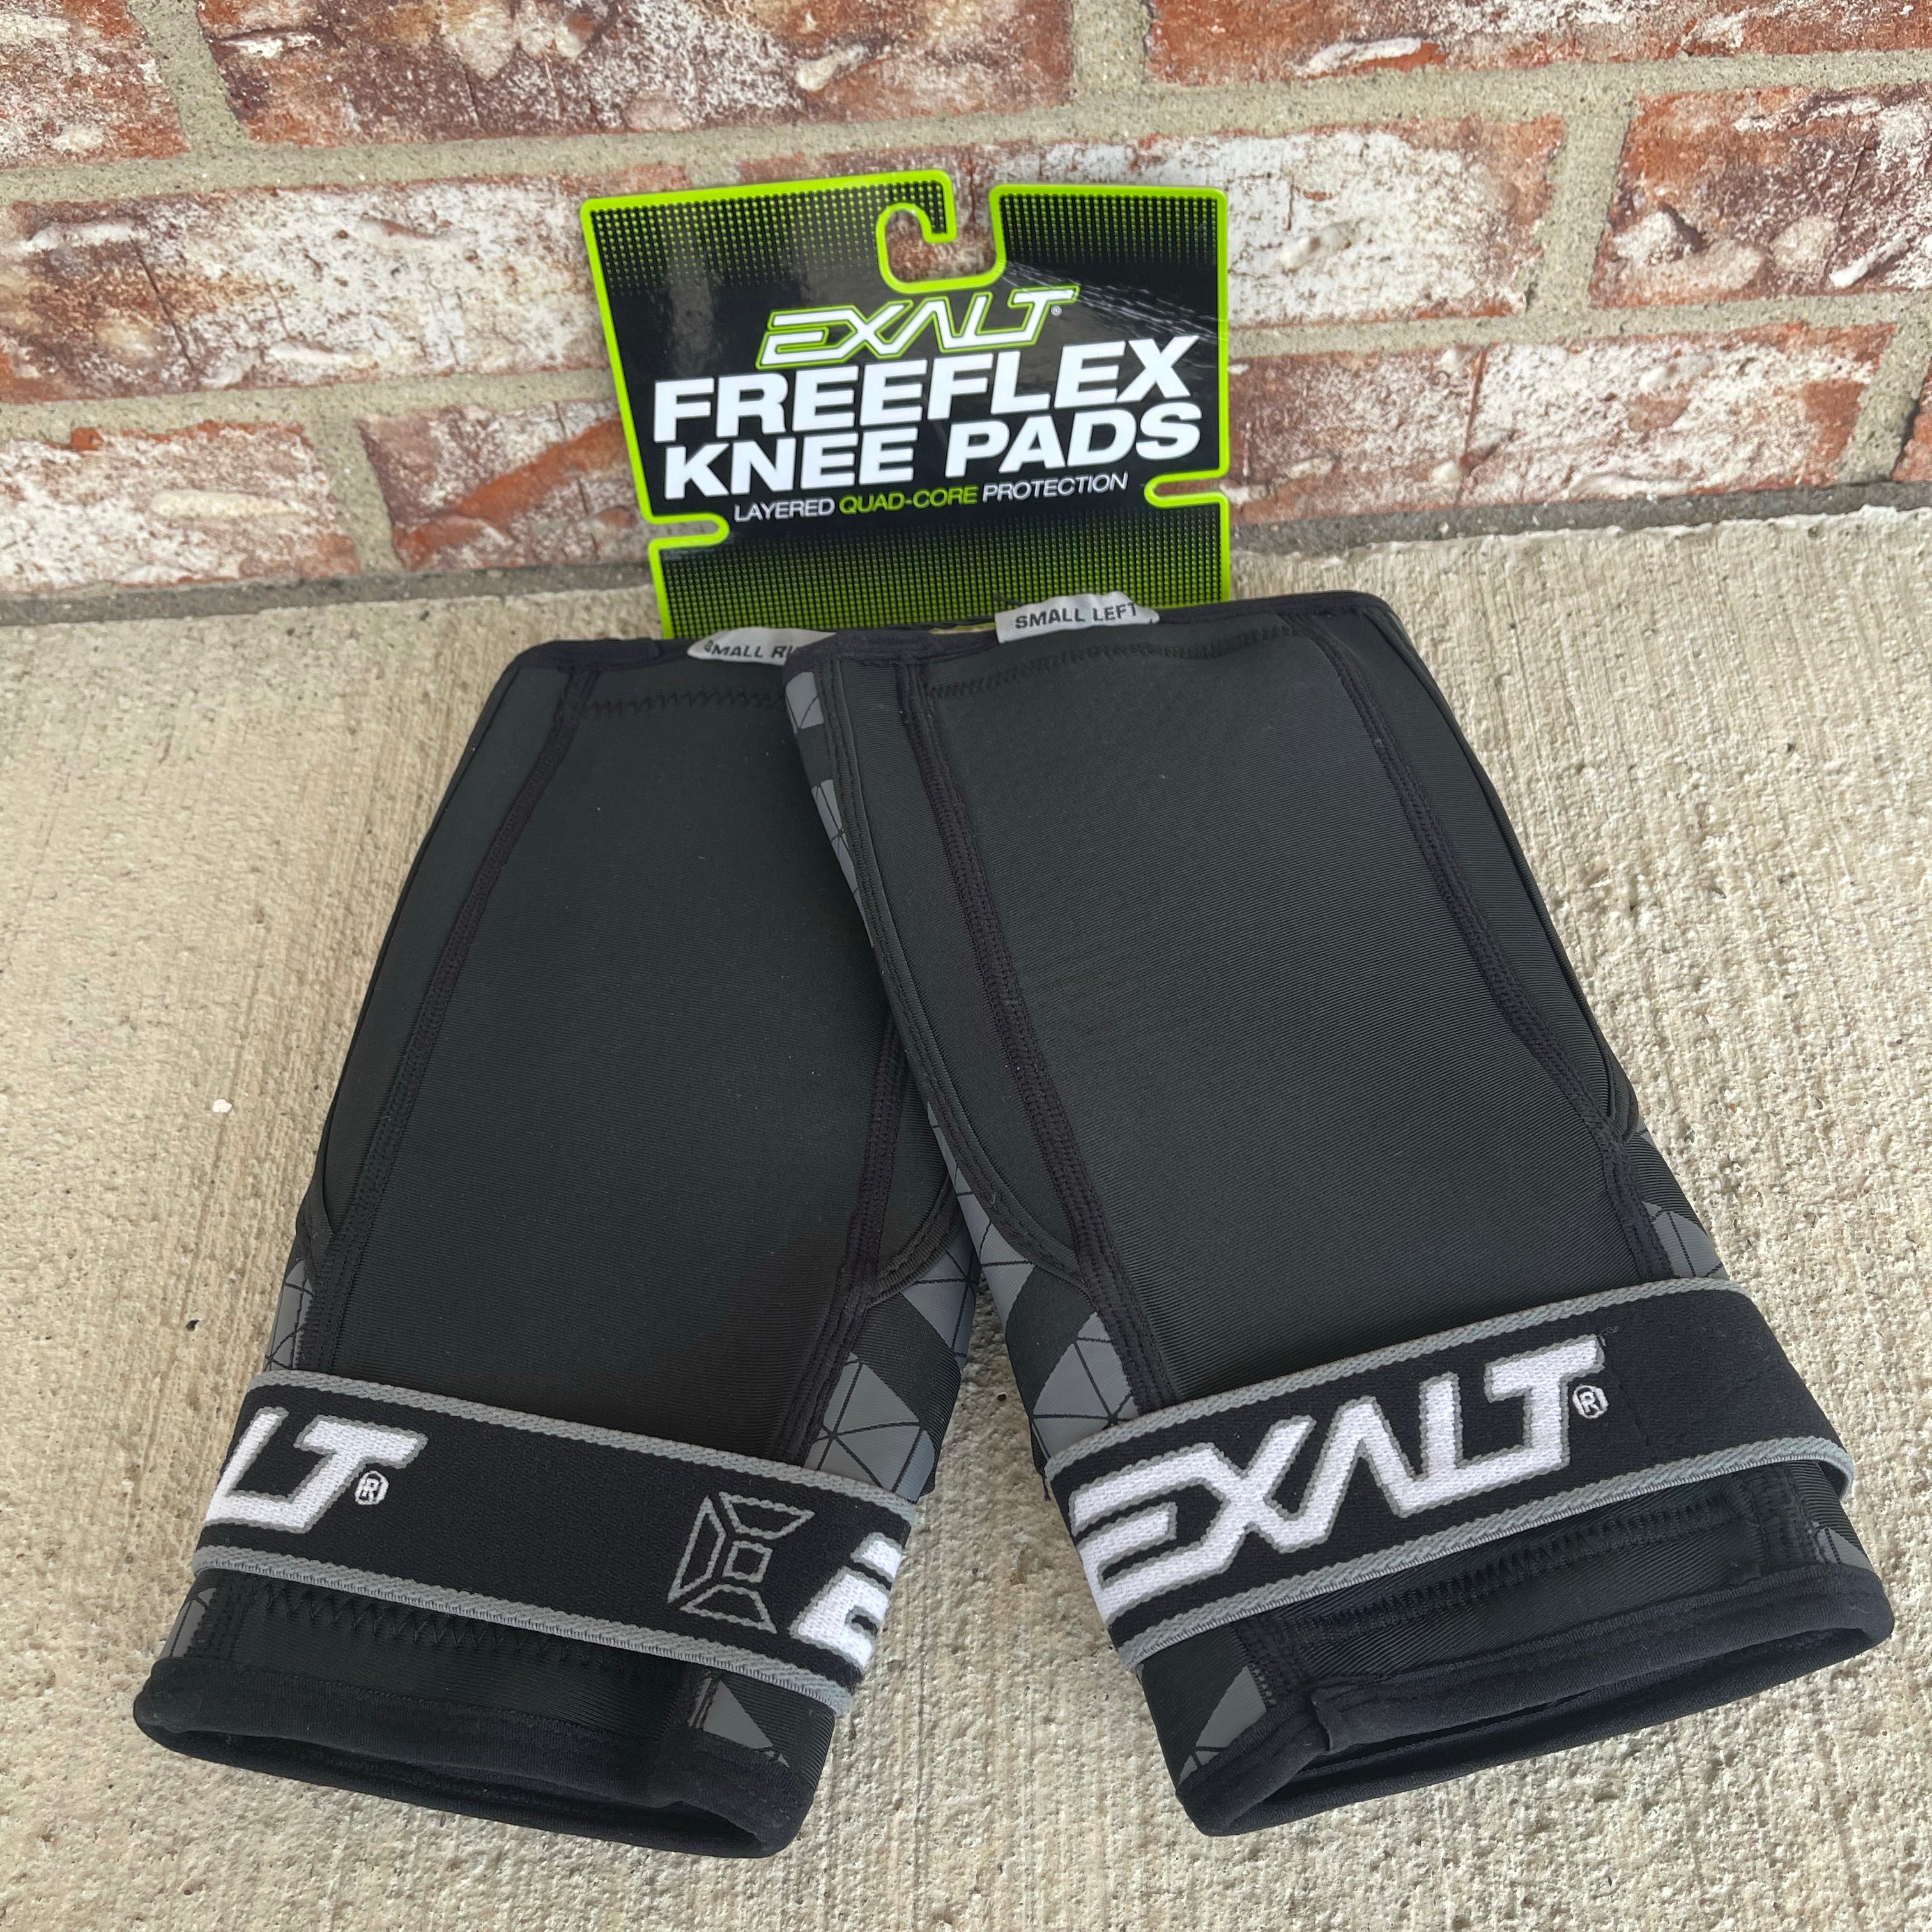 Used Exalt Freeflex Knee Pads - Small - Black